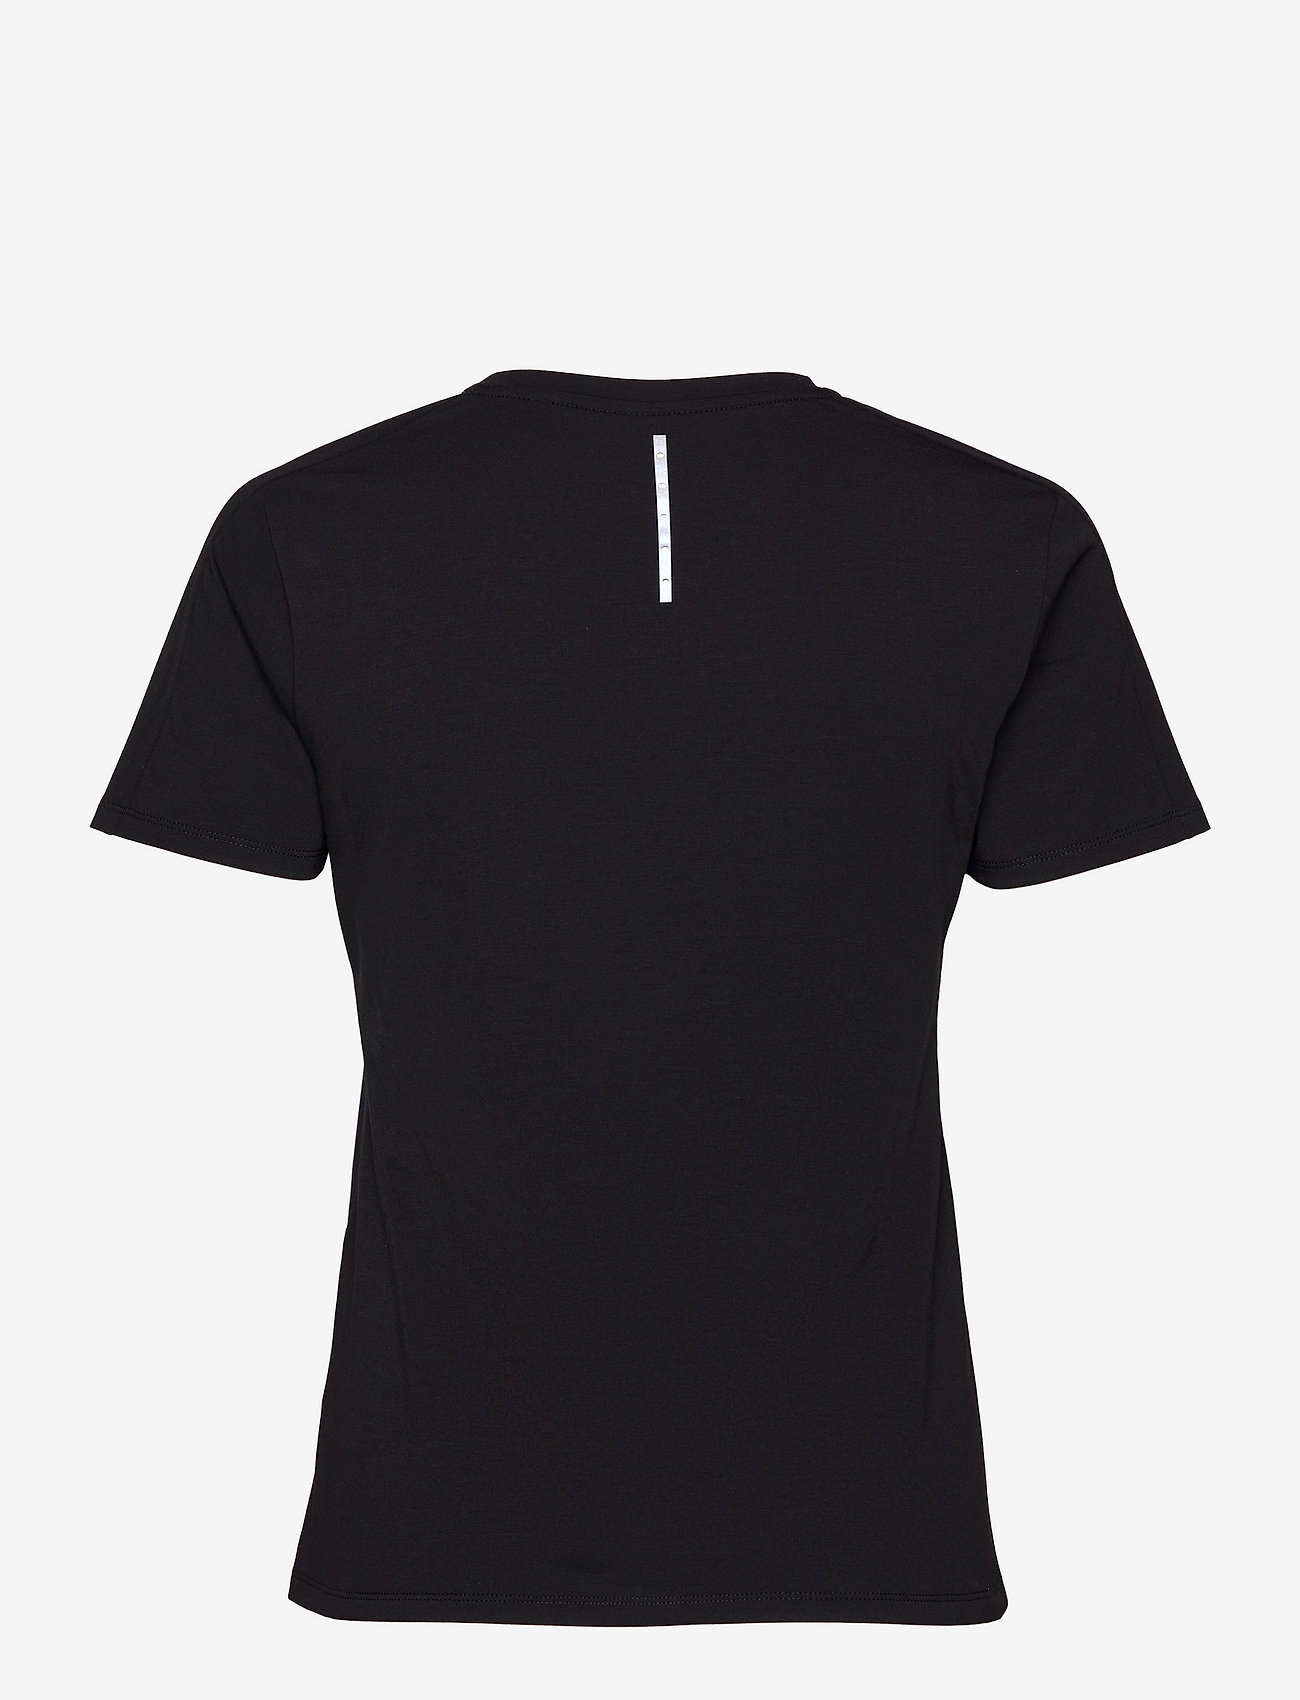 Rockay - Women's 20four7 Tee - t-shirts - midnight black - 1